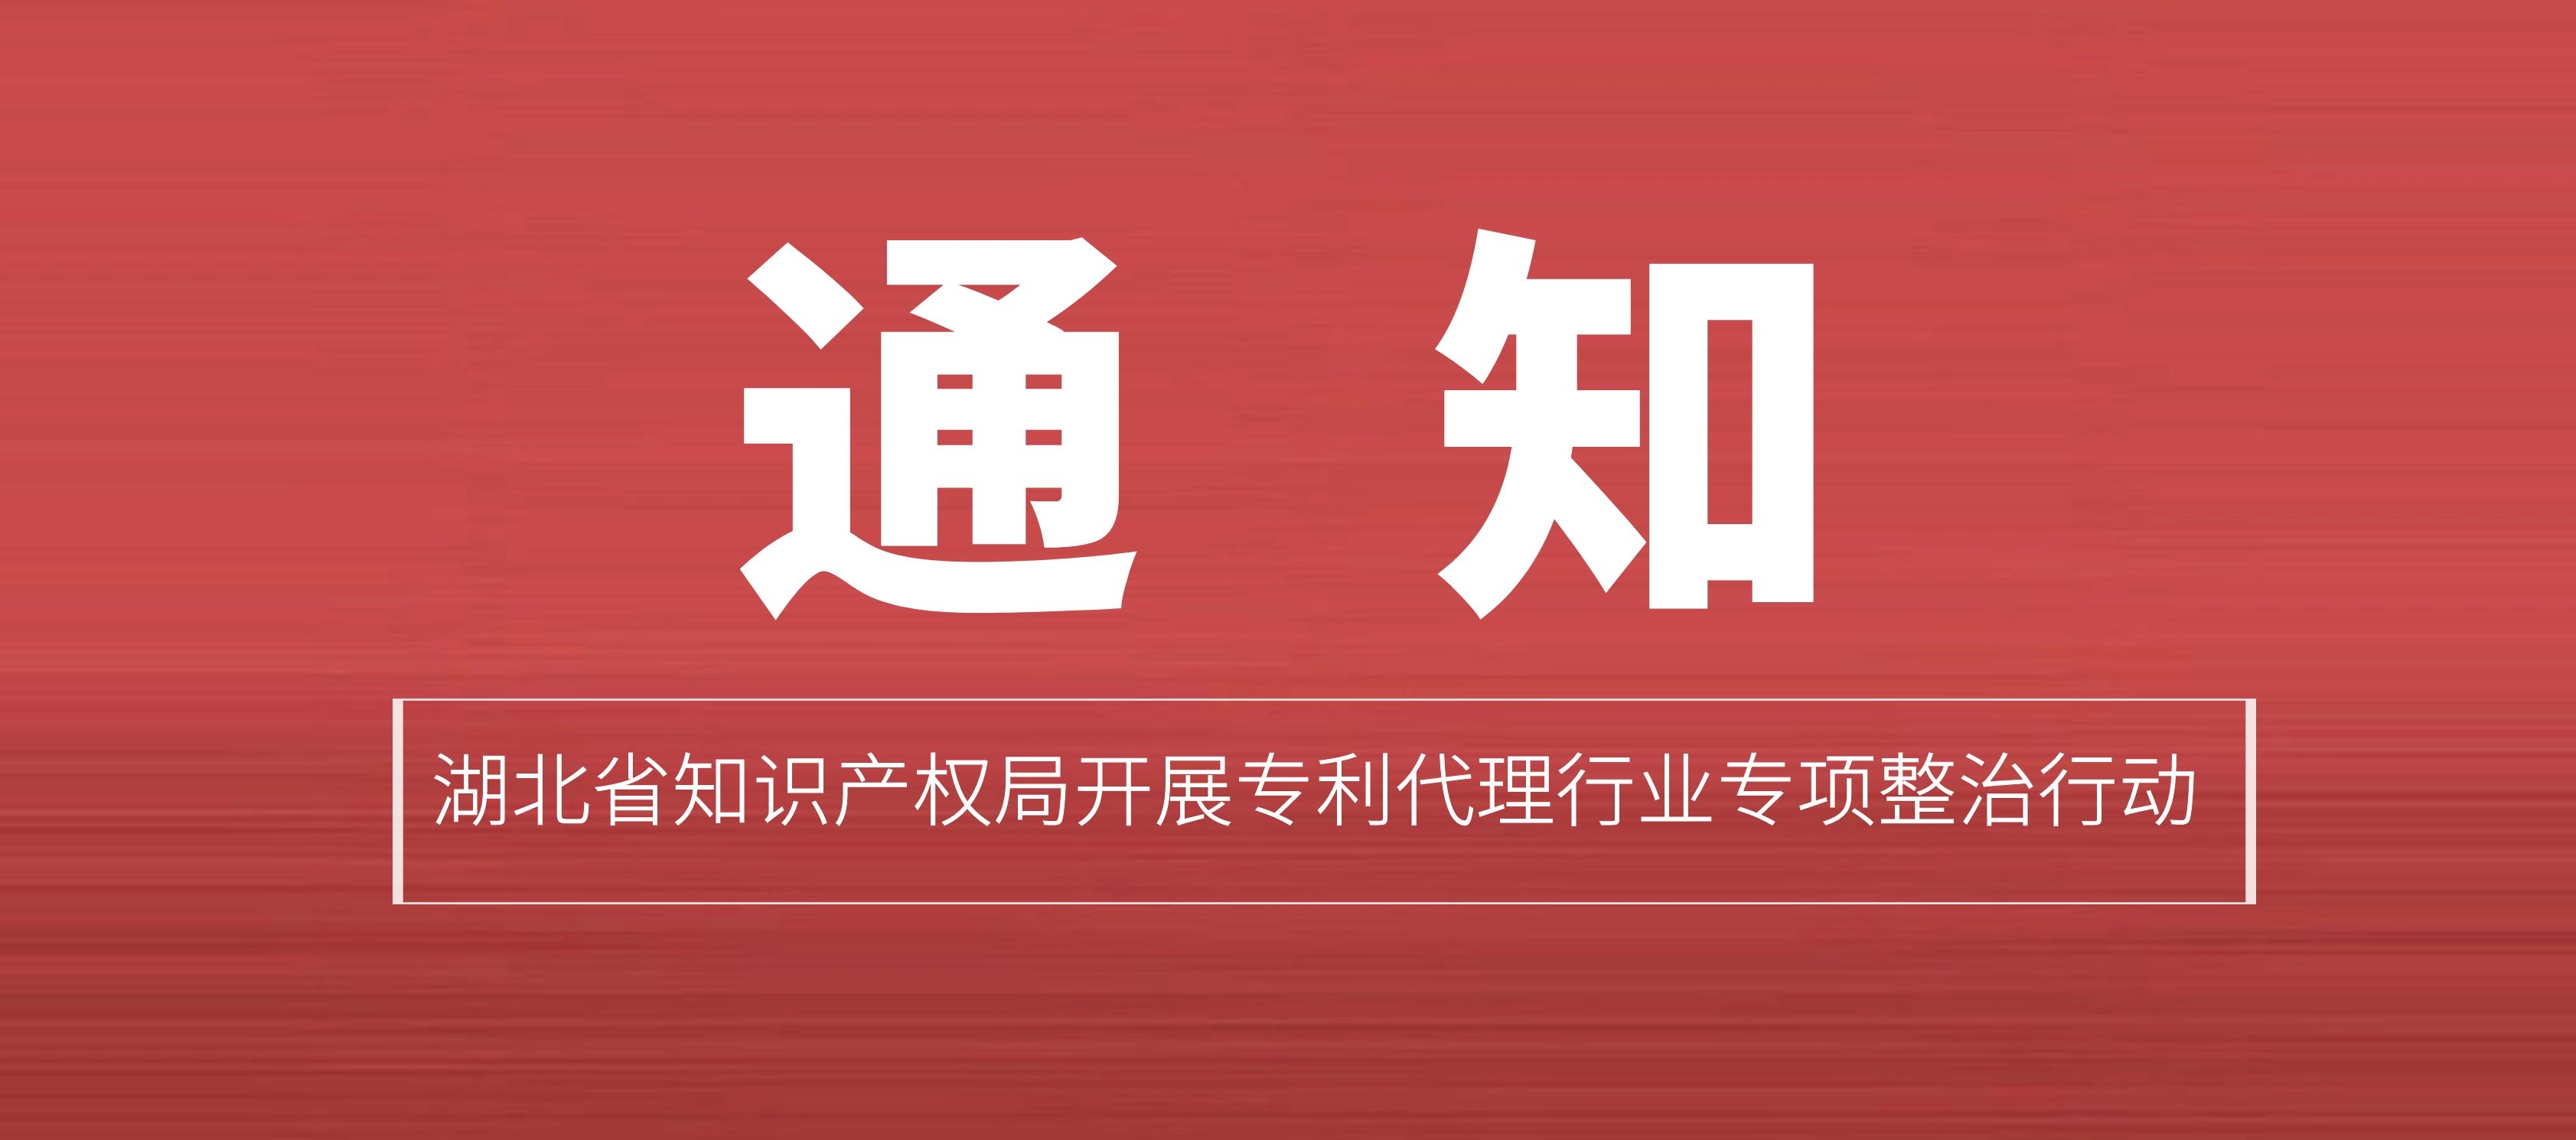 通知丨湖北省知识产权局开展专利代理行业专项整治行动